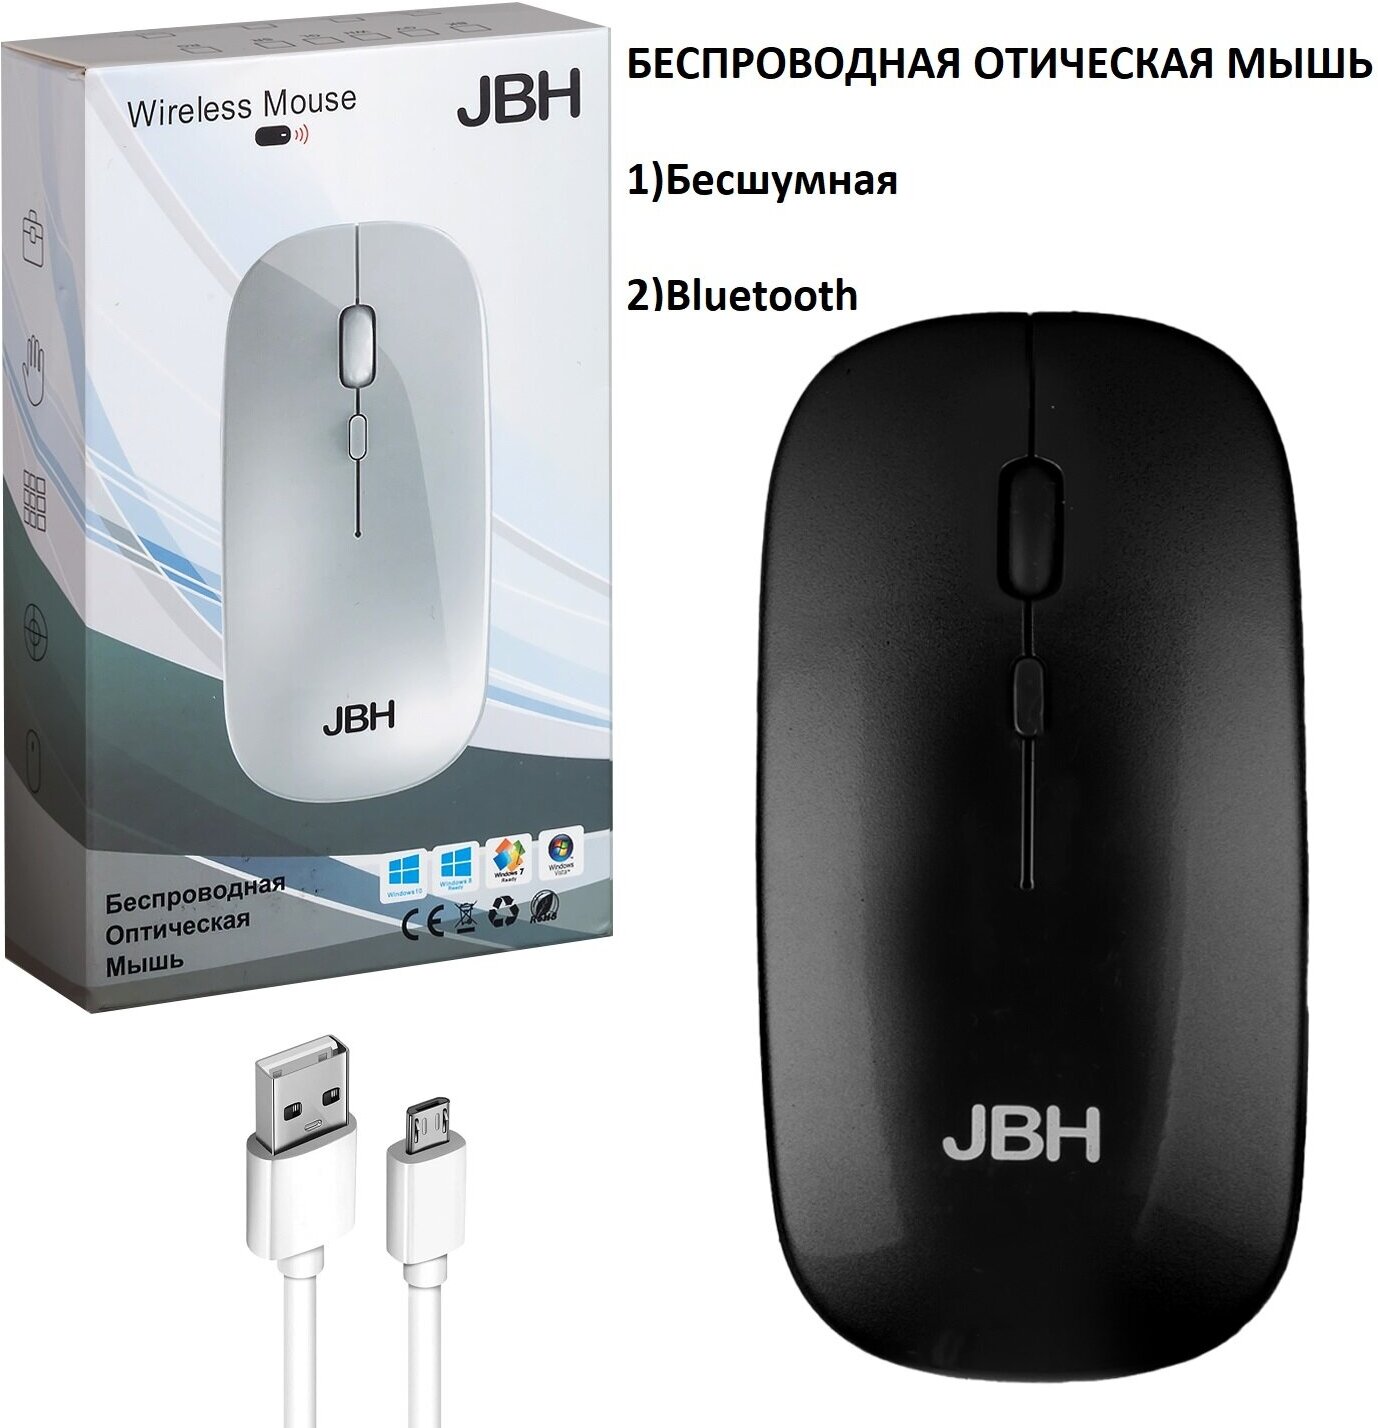 Беспроводная оптическая мышь JBH E-WM01 / Мышь беспроводная черная / Беспроводная мышь / Мышь компьютерная беспроводная / Компьютерная мышь